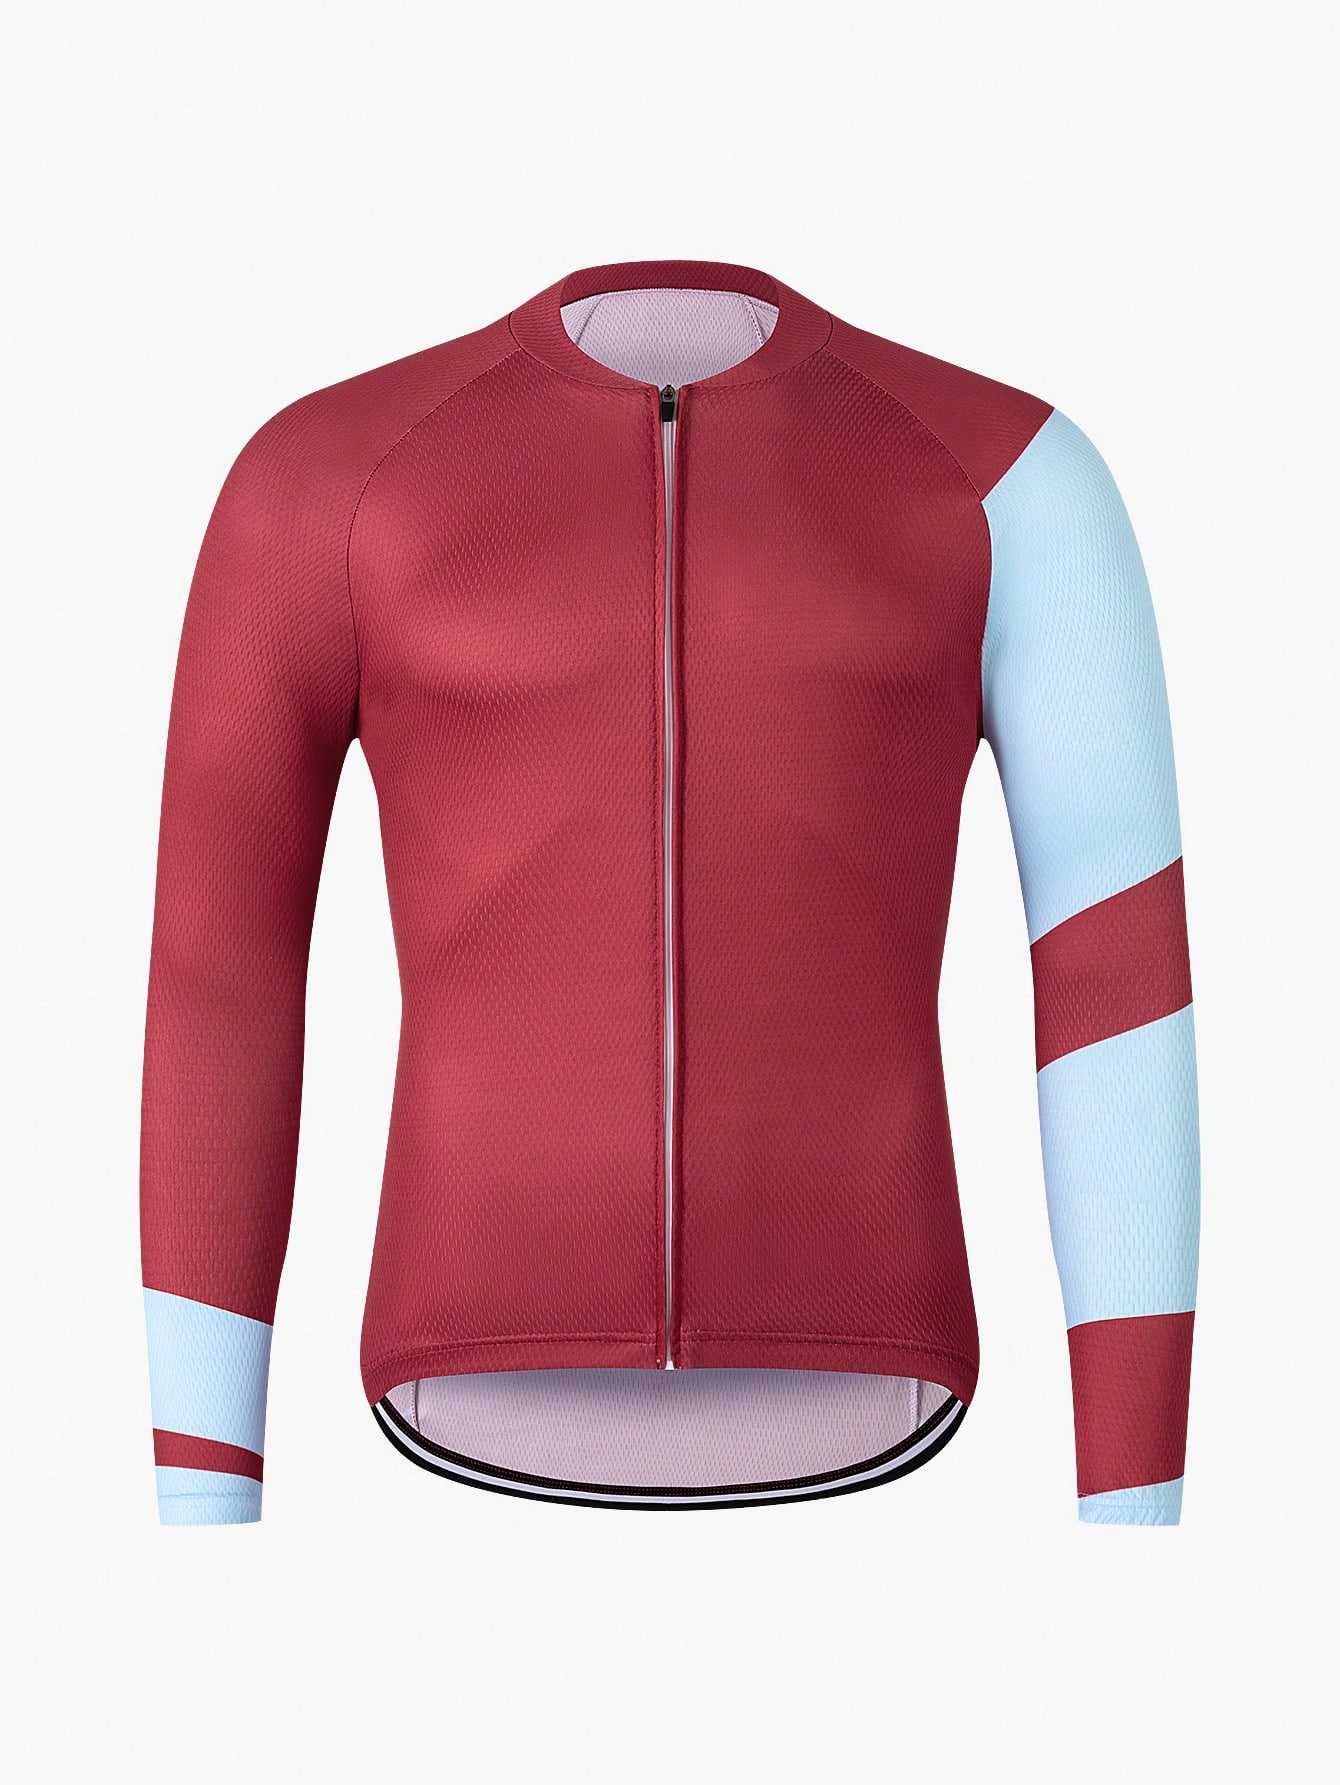 Велосипедная куртка с коротким рукавом спереди на молнии цветных блоков с рукавом реглан для воздухопроницаемости, красный